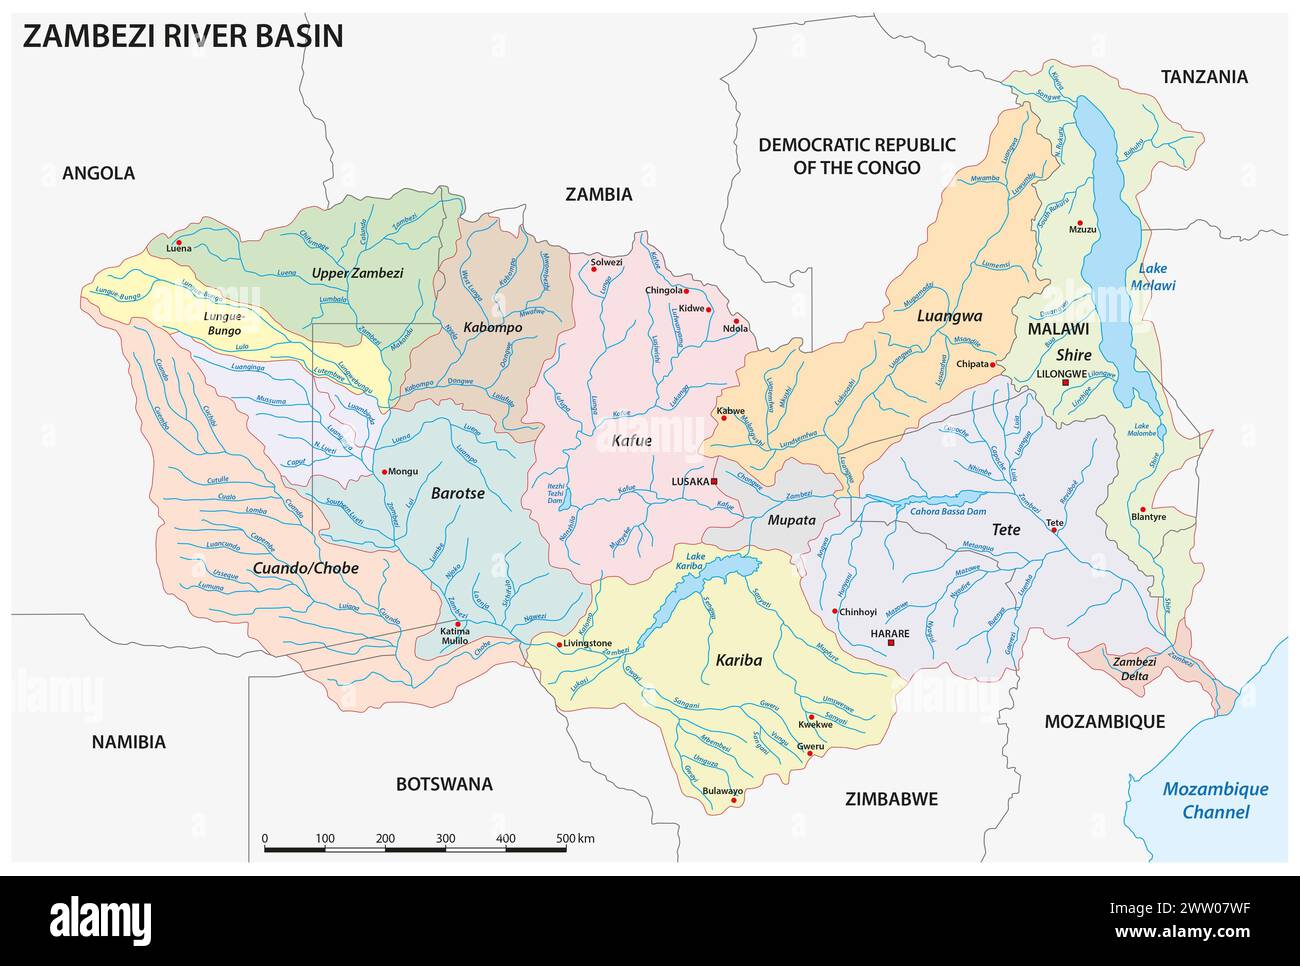 Detaillierte Vektorkarte des Zambezi-Flussbeckens Stockfoto